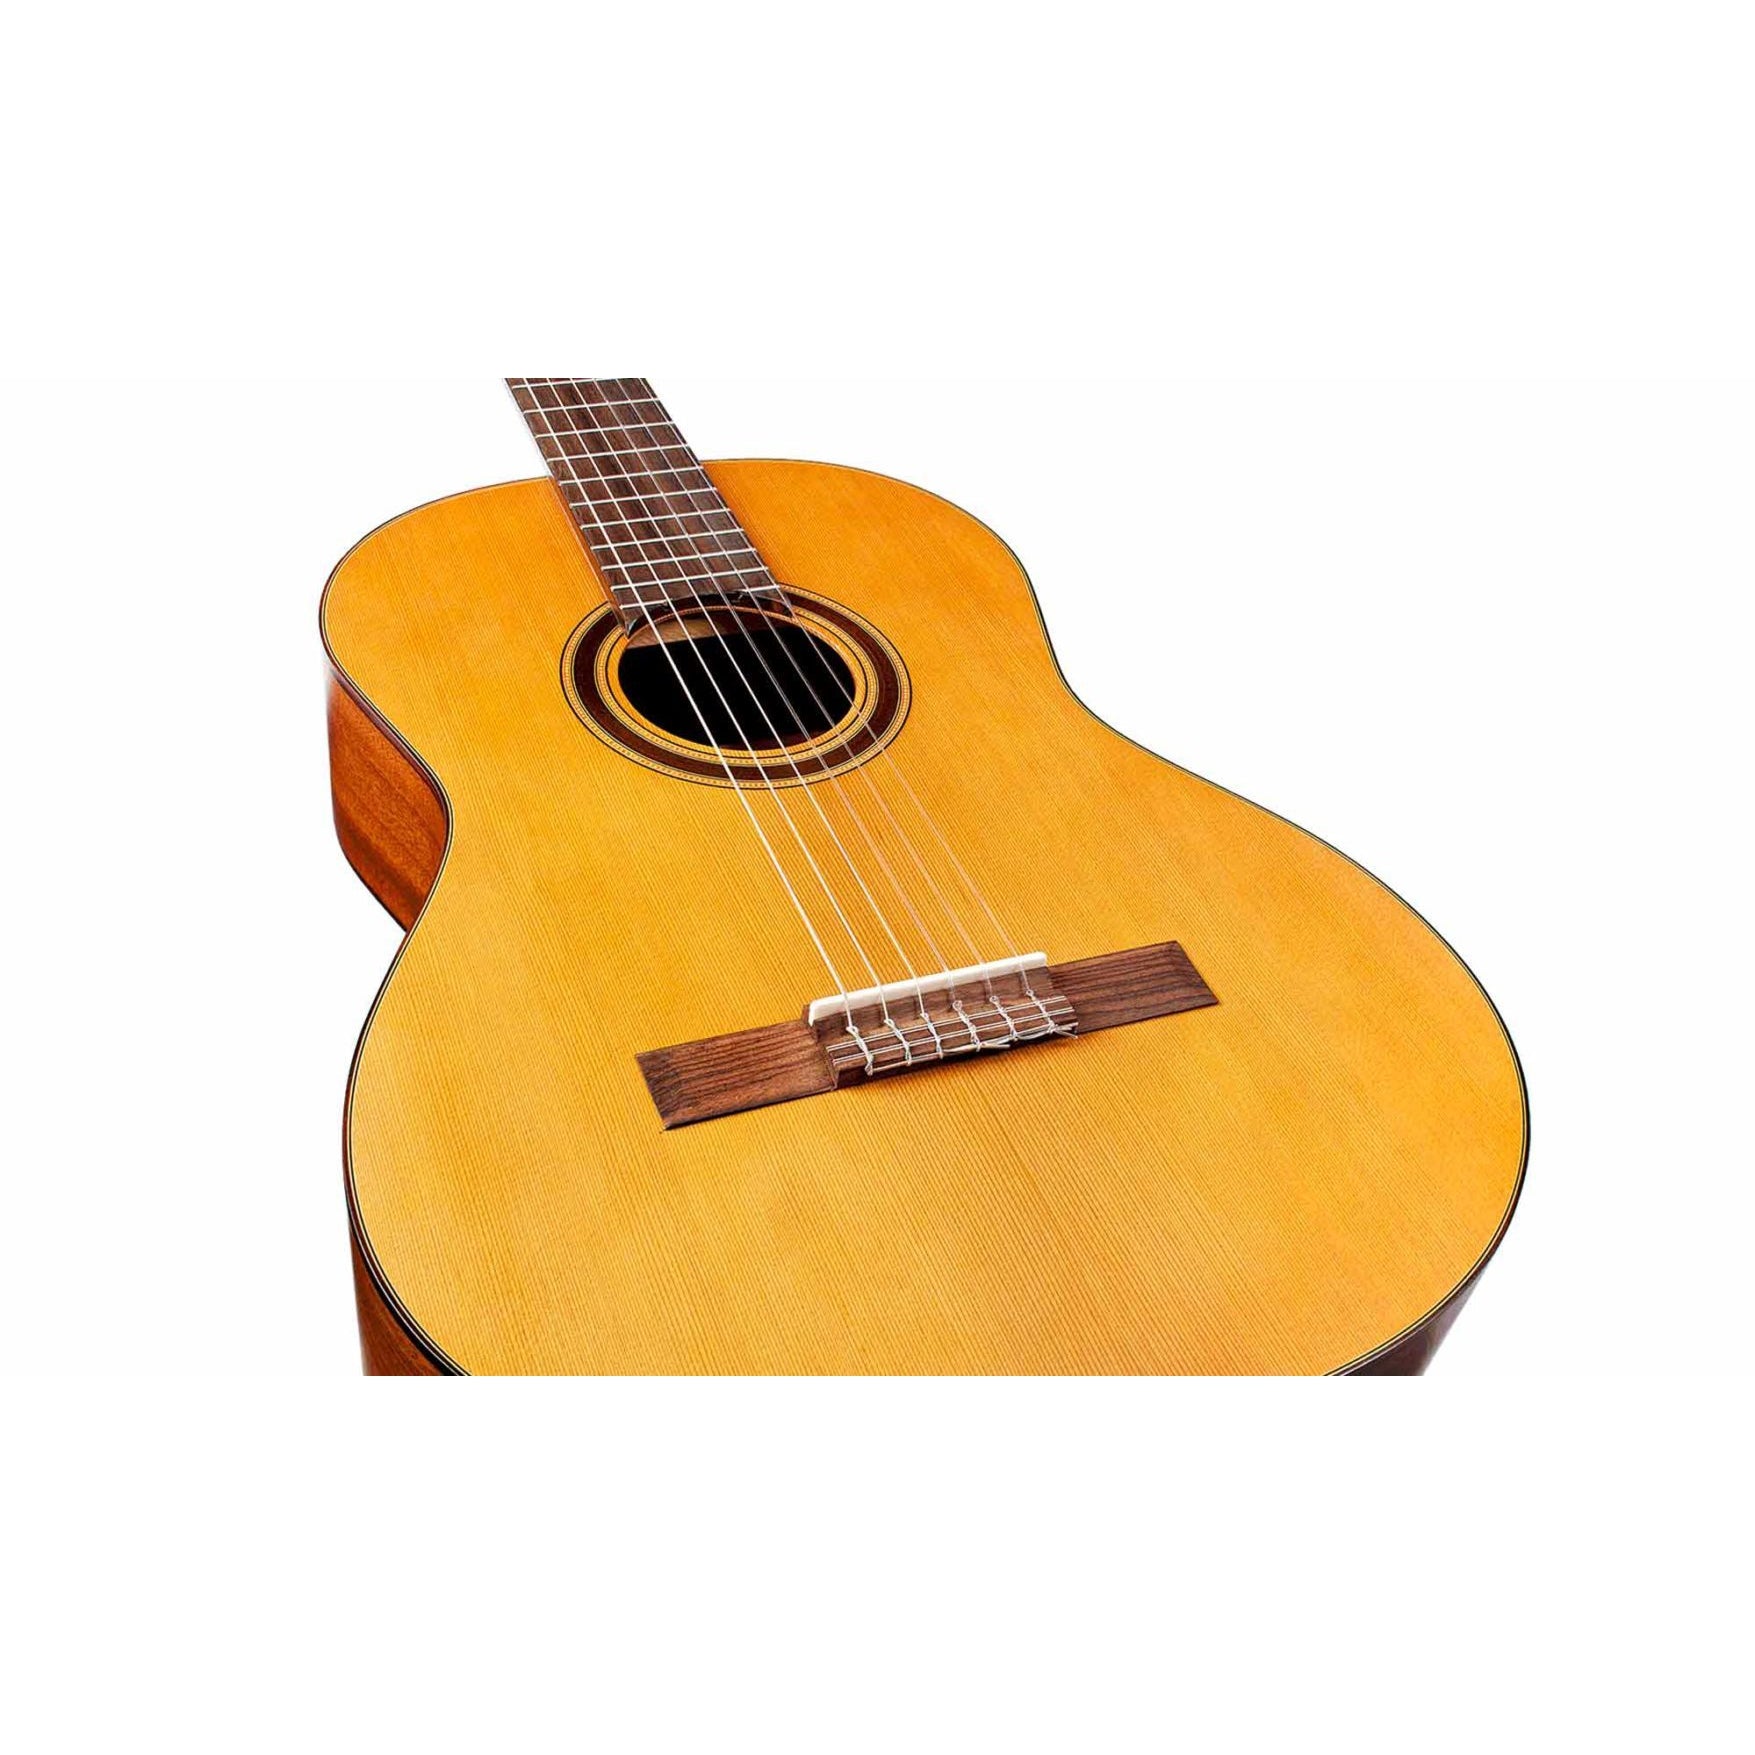 Protégé C1M 1/2 - natural Guitare classique format 1/2 Cordoba